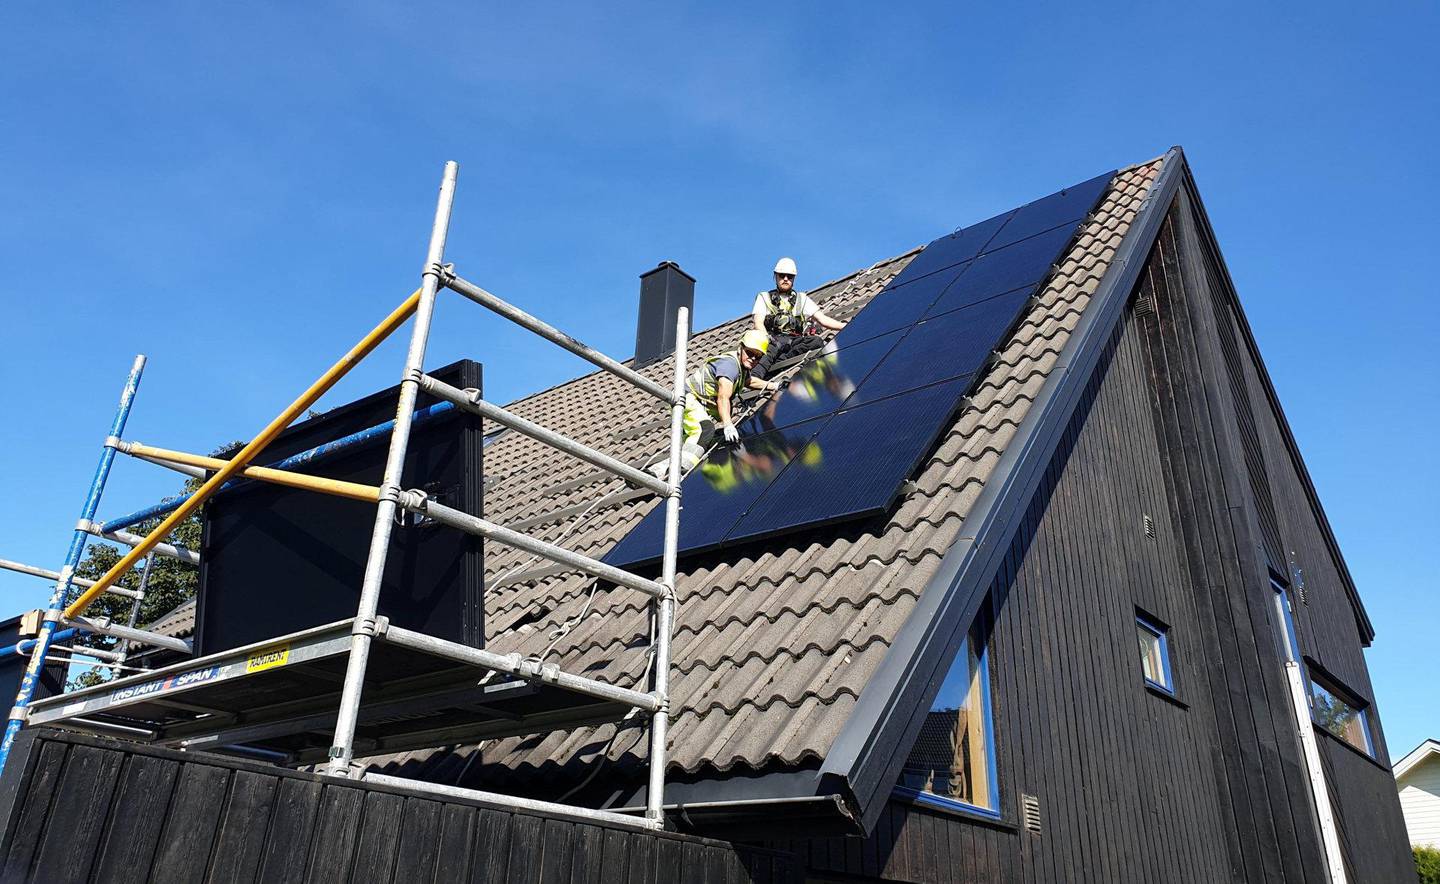 Før helgen fikk Frede Dyrby Christensen i Skjeberg i Østfold, solcelleanlegg på hustaket sitt. De 16 panelene produserer cirka 4.500 kilowattimer i året. FOTO: BJØRN FJELL